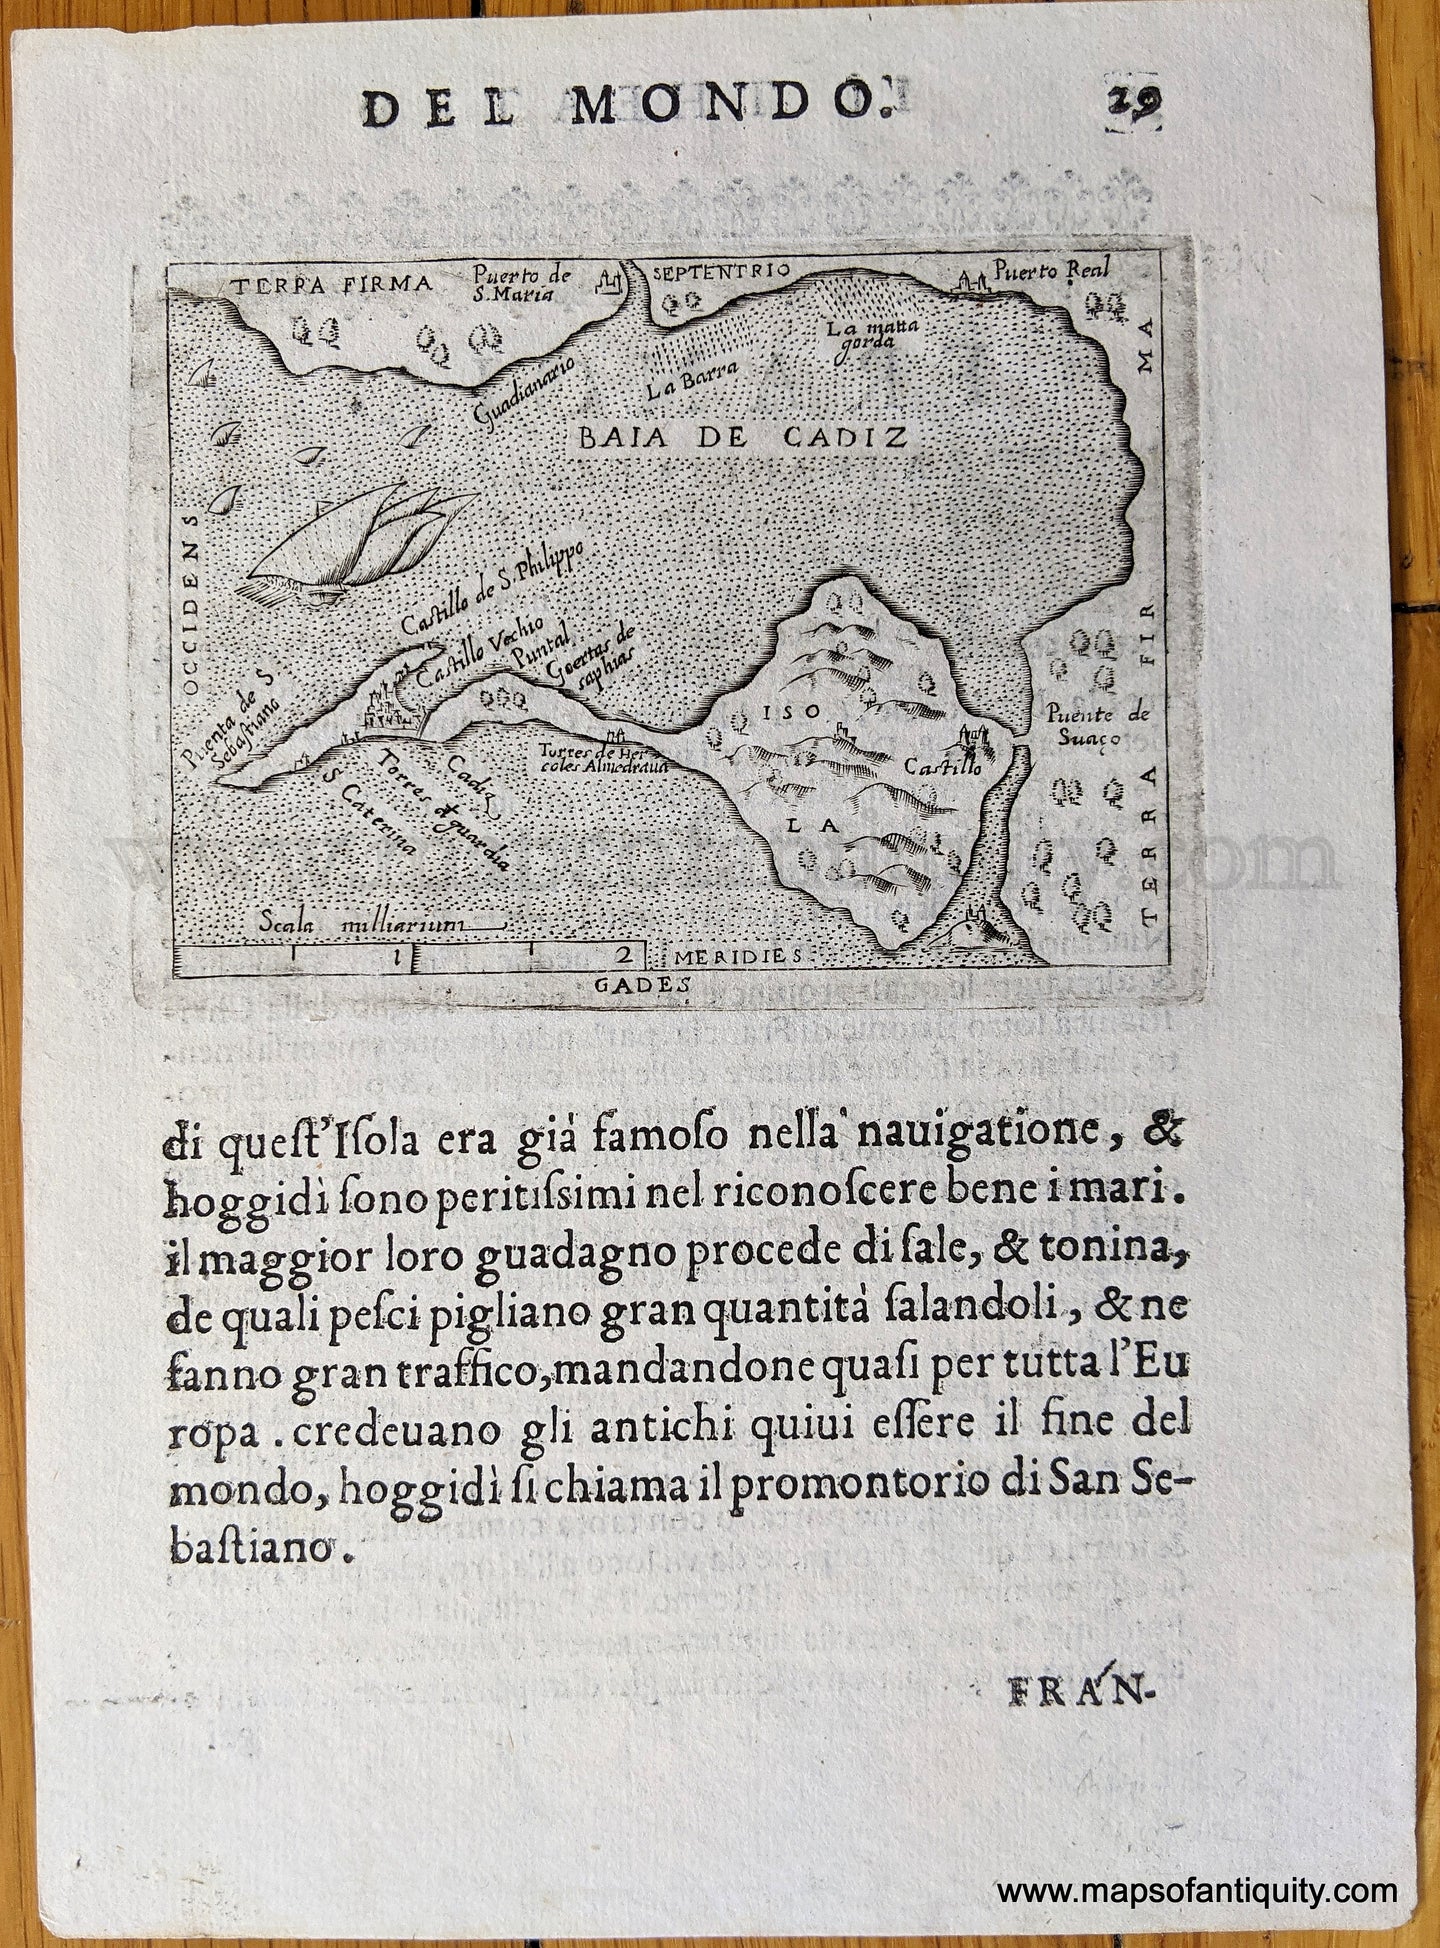 Genuine-Antique-Map-Baia-de-Cadiz---Spain-Europe-Spain-&-Portugal-1655-Ortelius-Maps-Of-Antiquity-1800s-19th-century